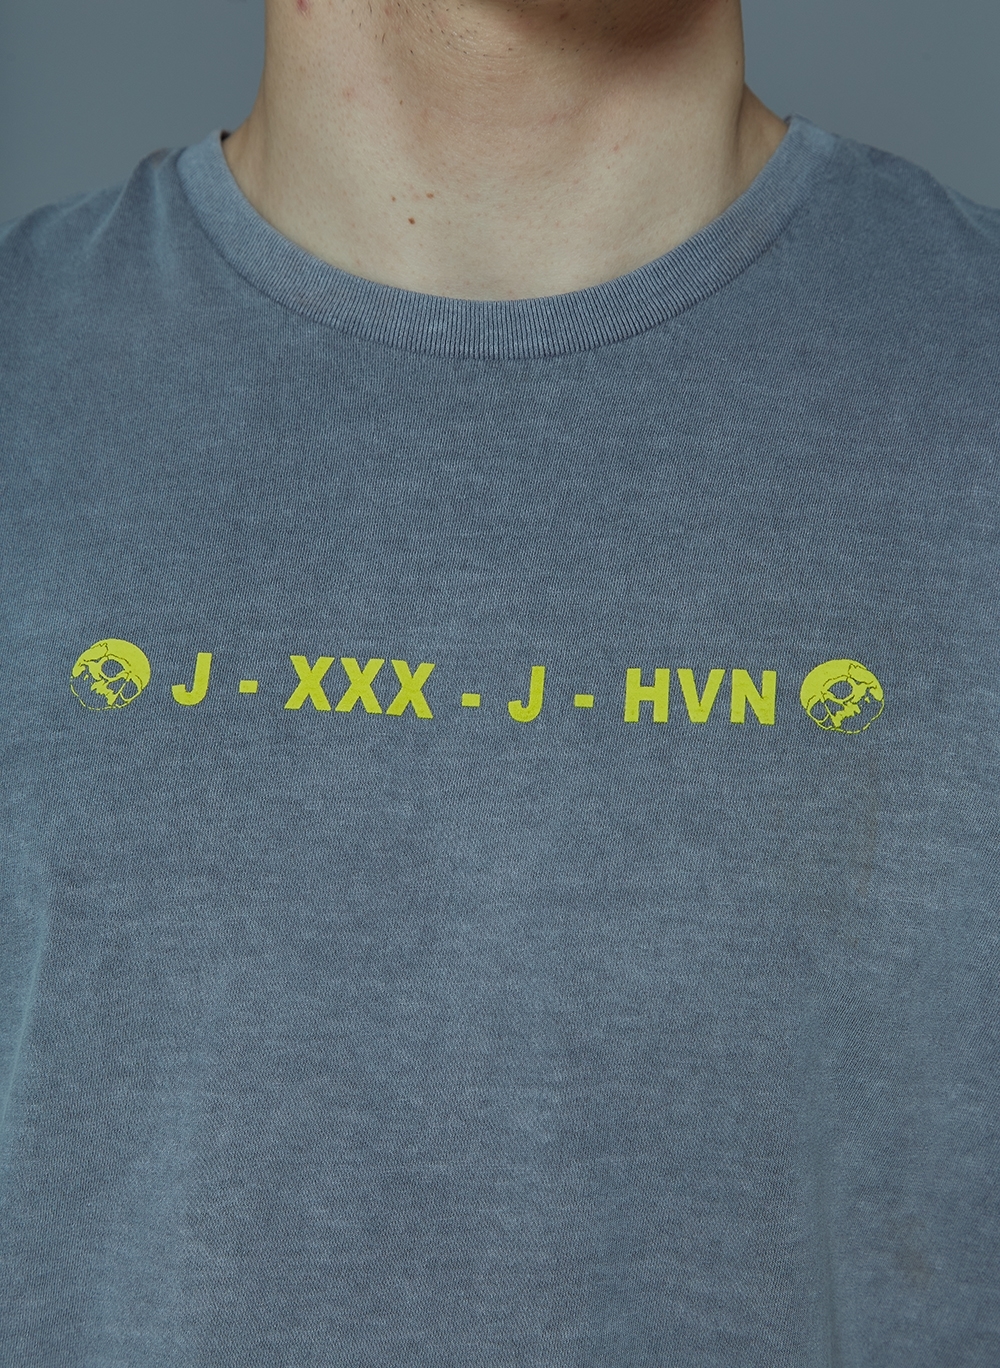 Camiseta John John Logo Mescla Masculina 42.54.2244